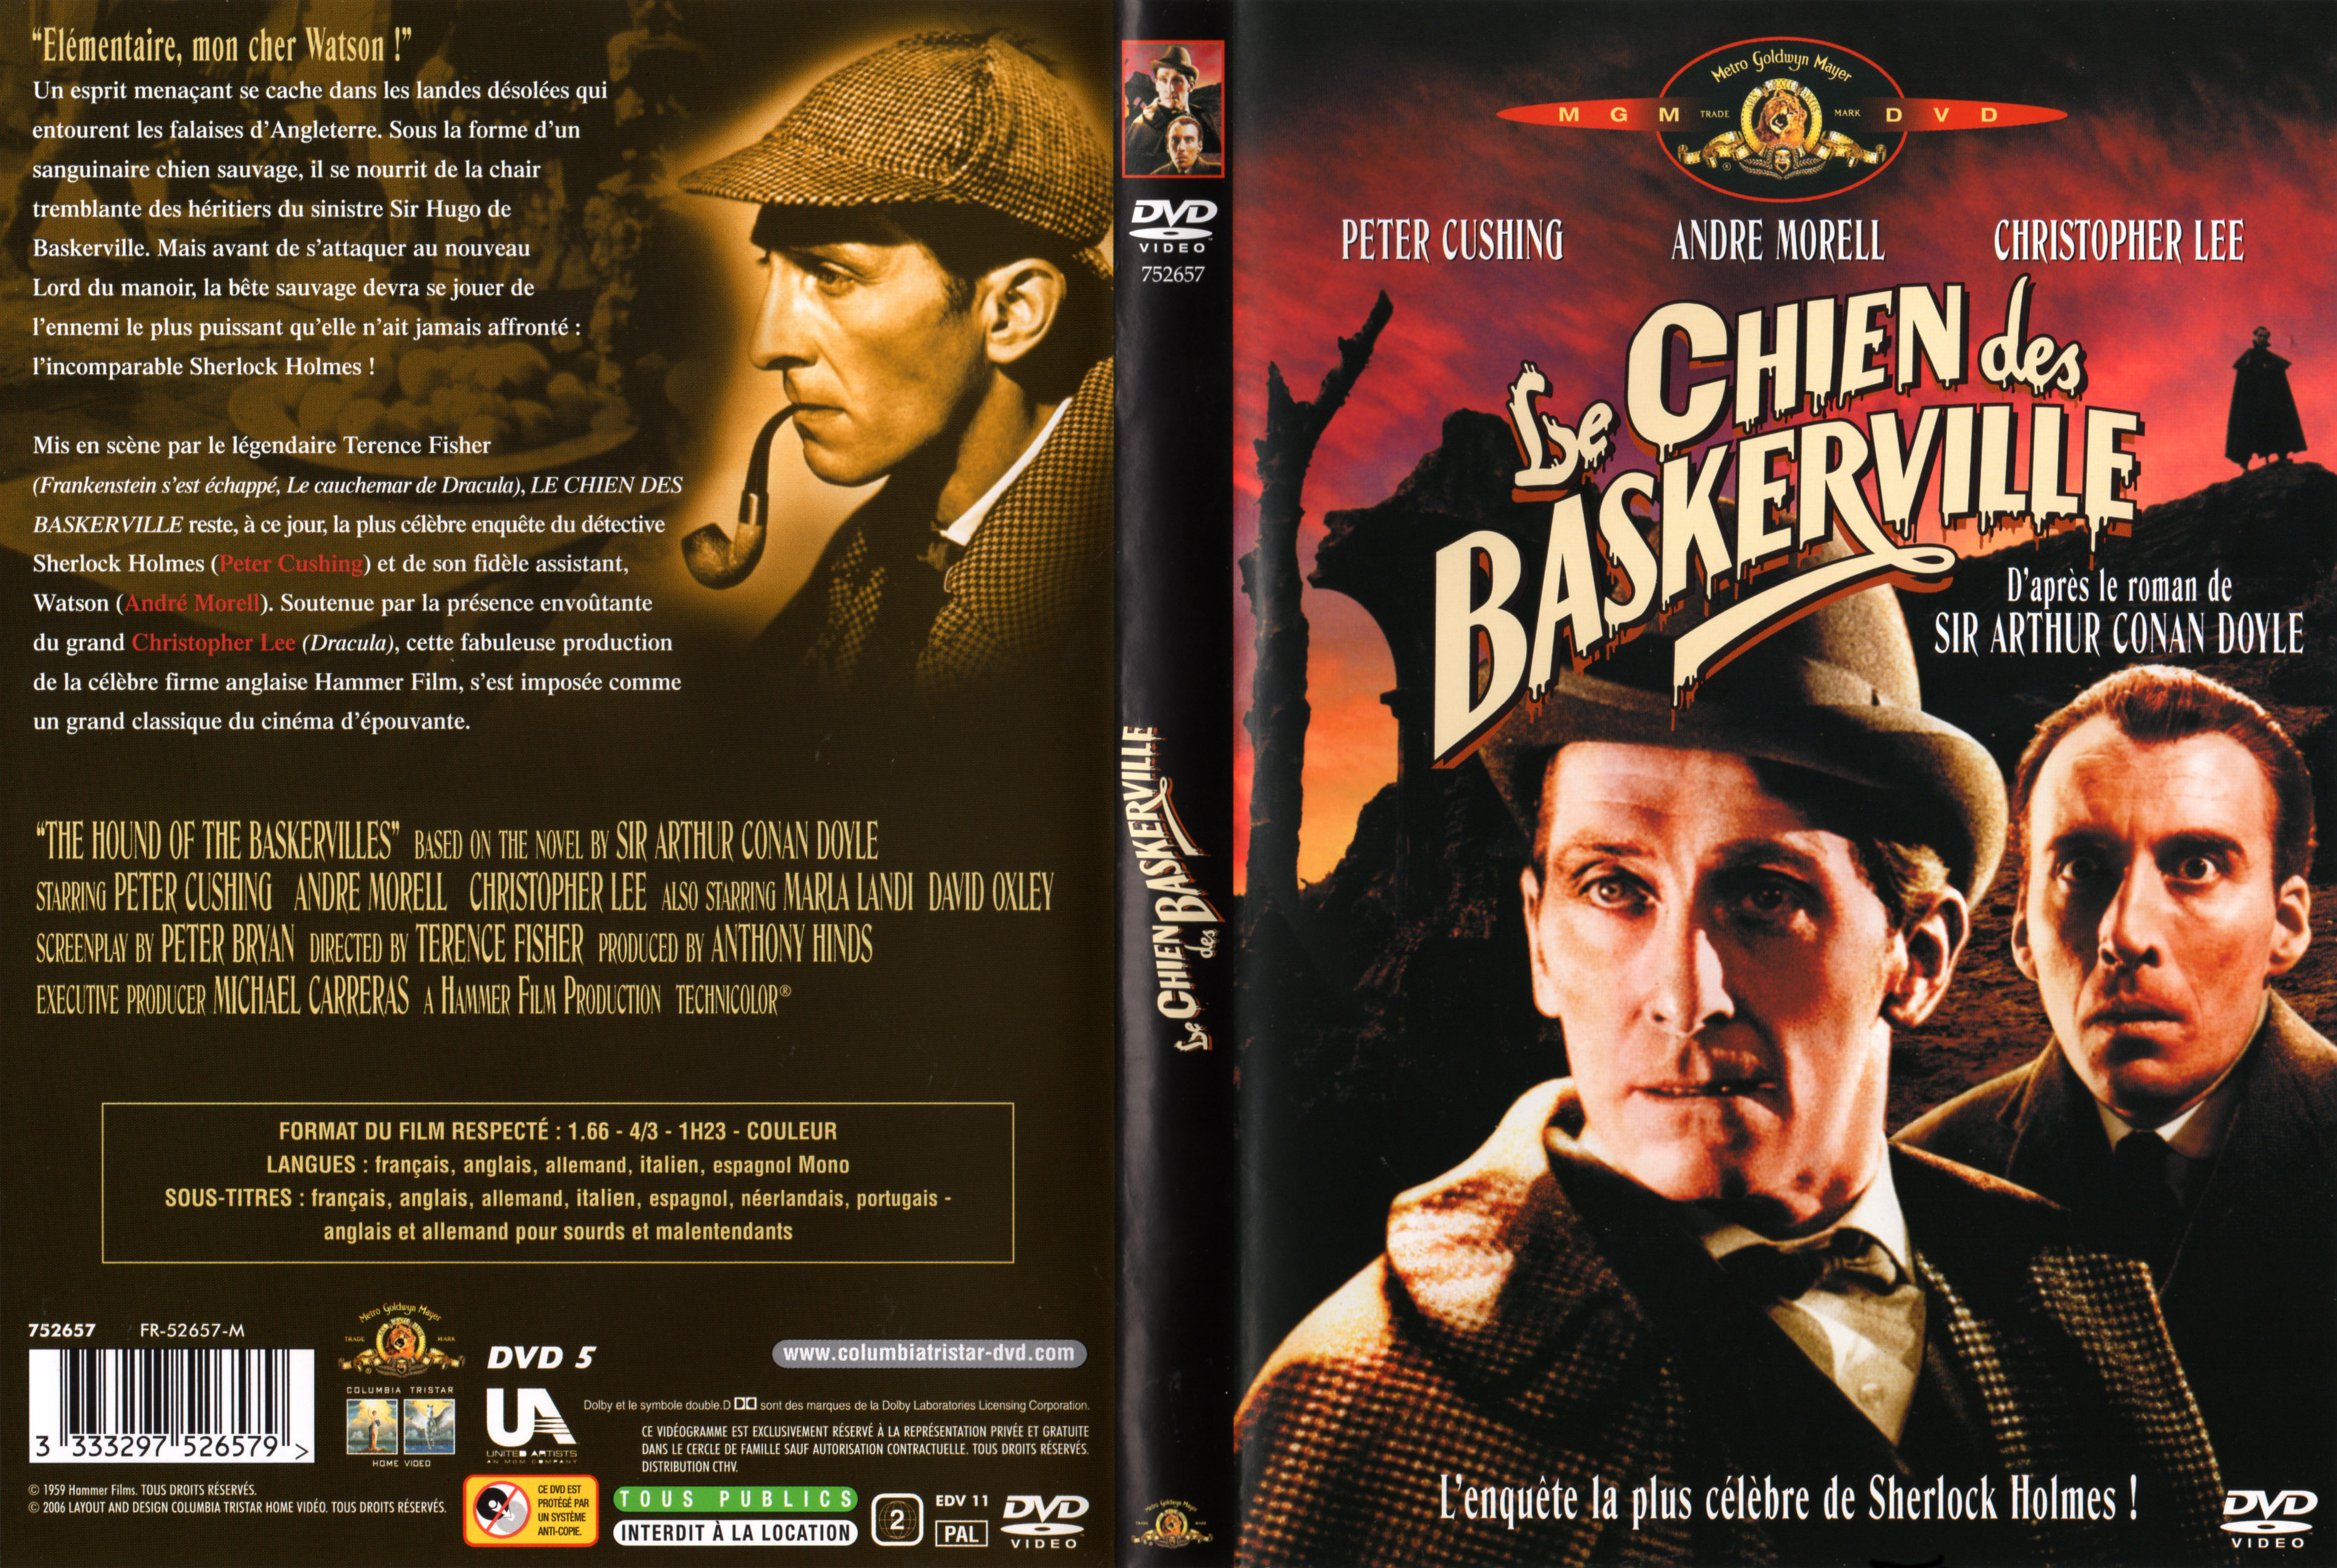 Jaquette DVD Le chien des Baskerville v2